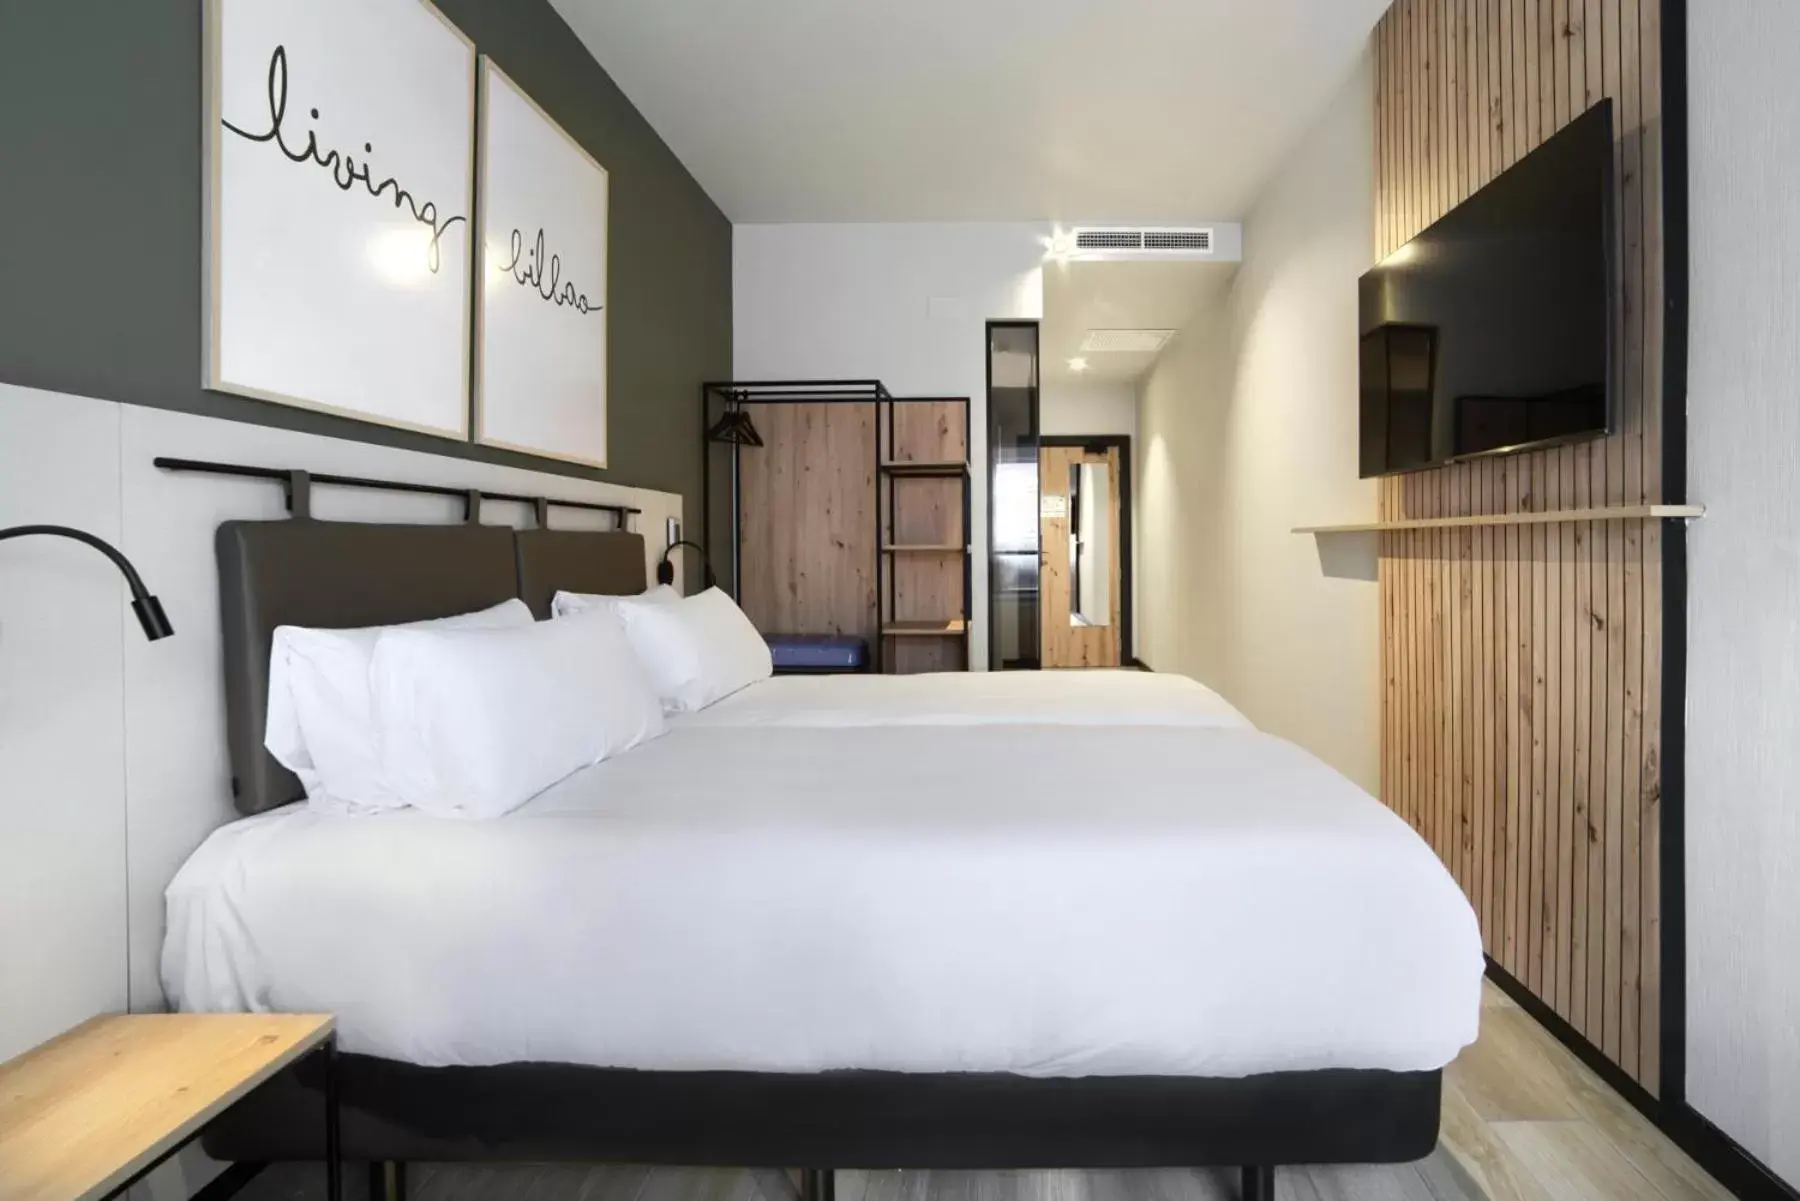 Bed in Hotel Bed4U Bilbao